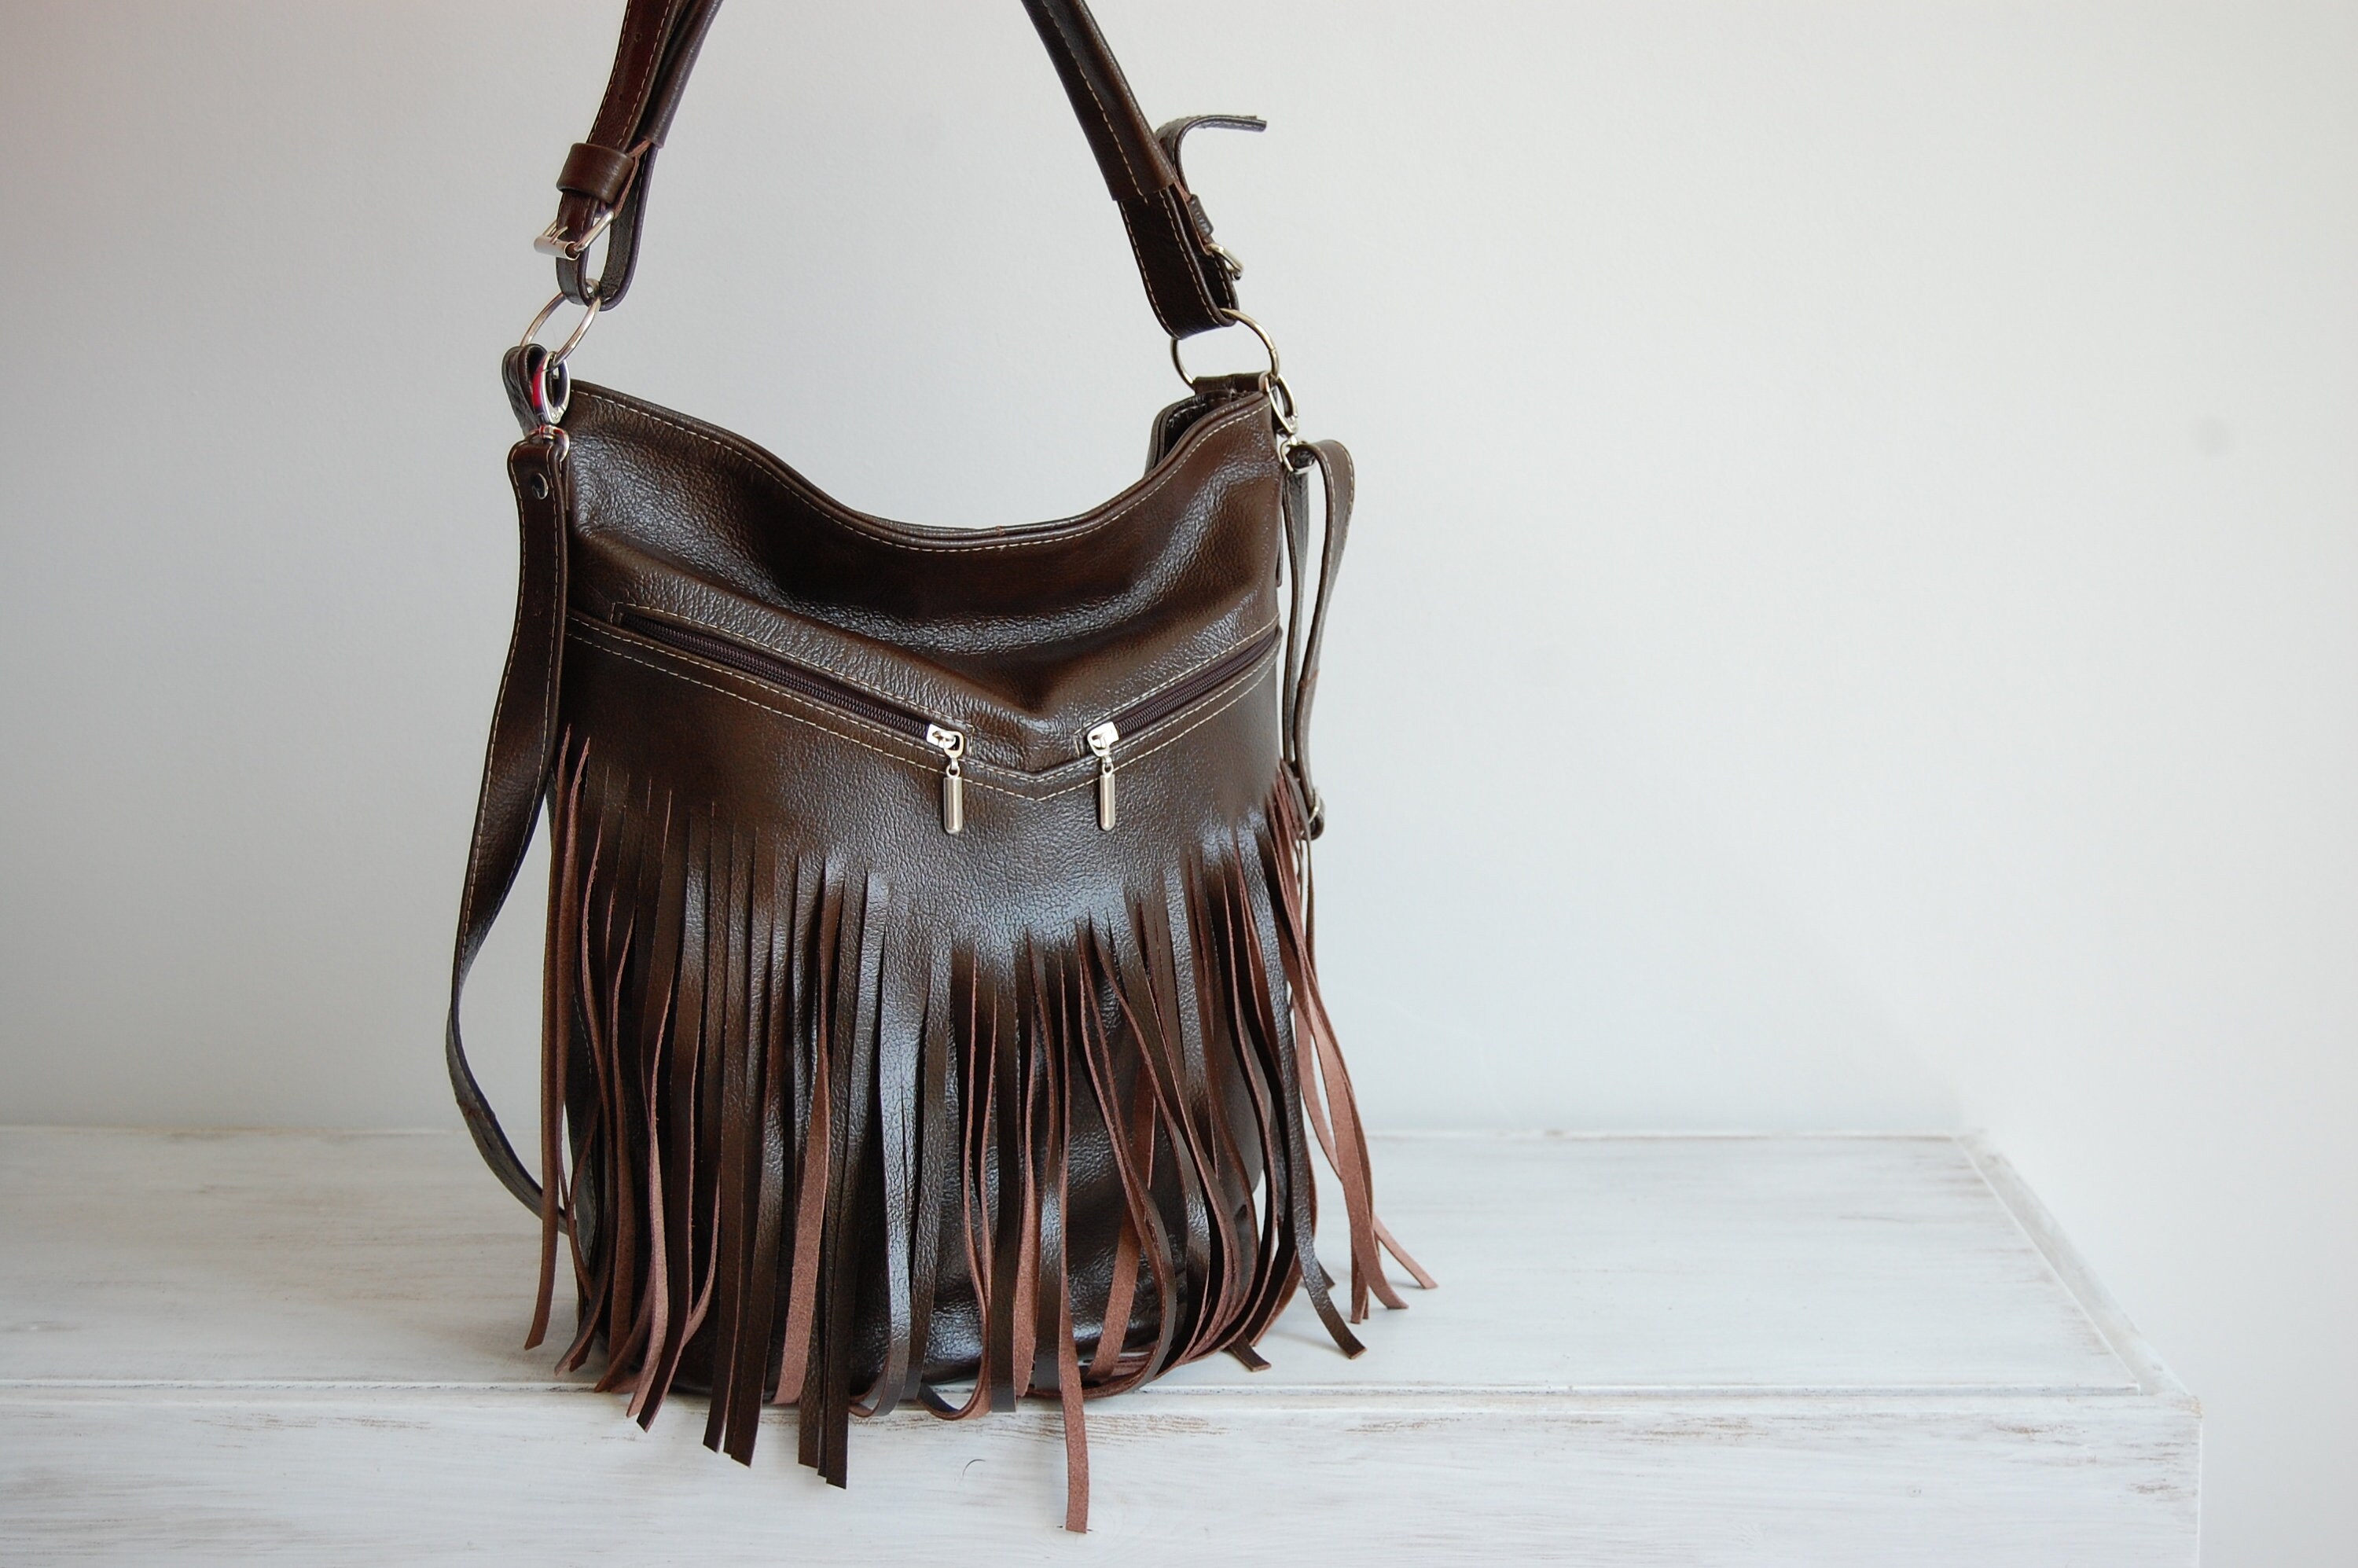 BROWN Hobo Bag Leather Fringe Bag Bag with Tassels Large | Etsy